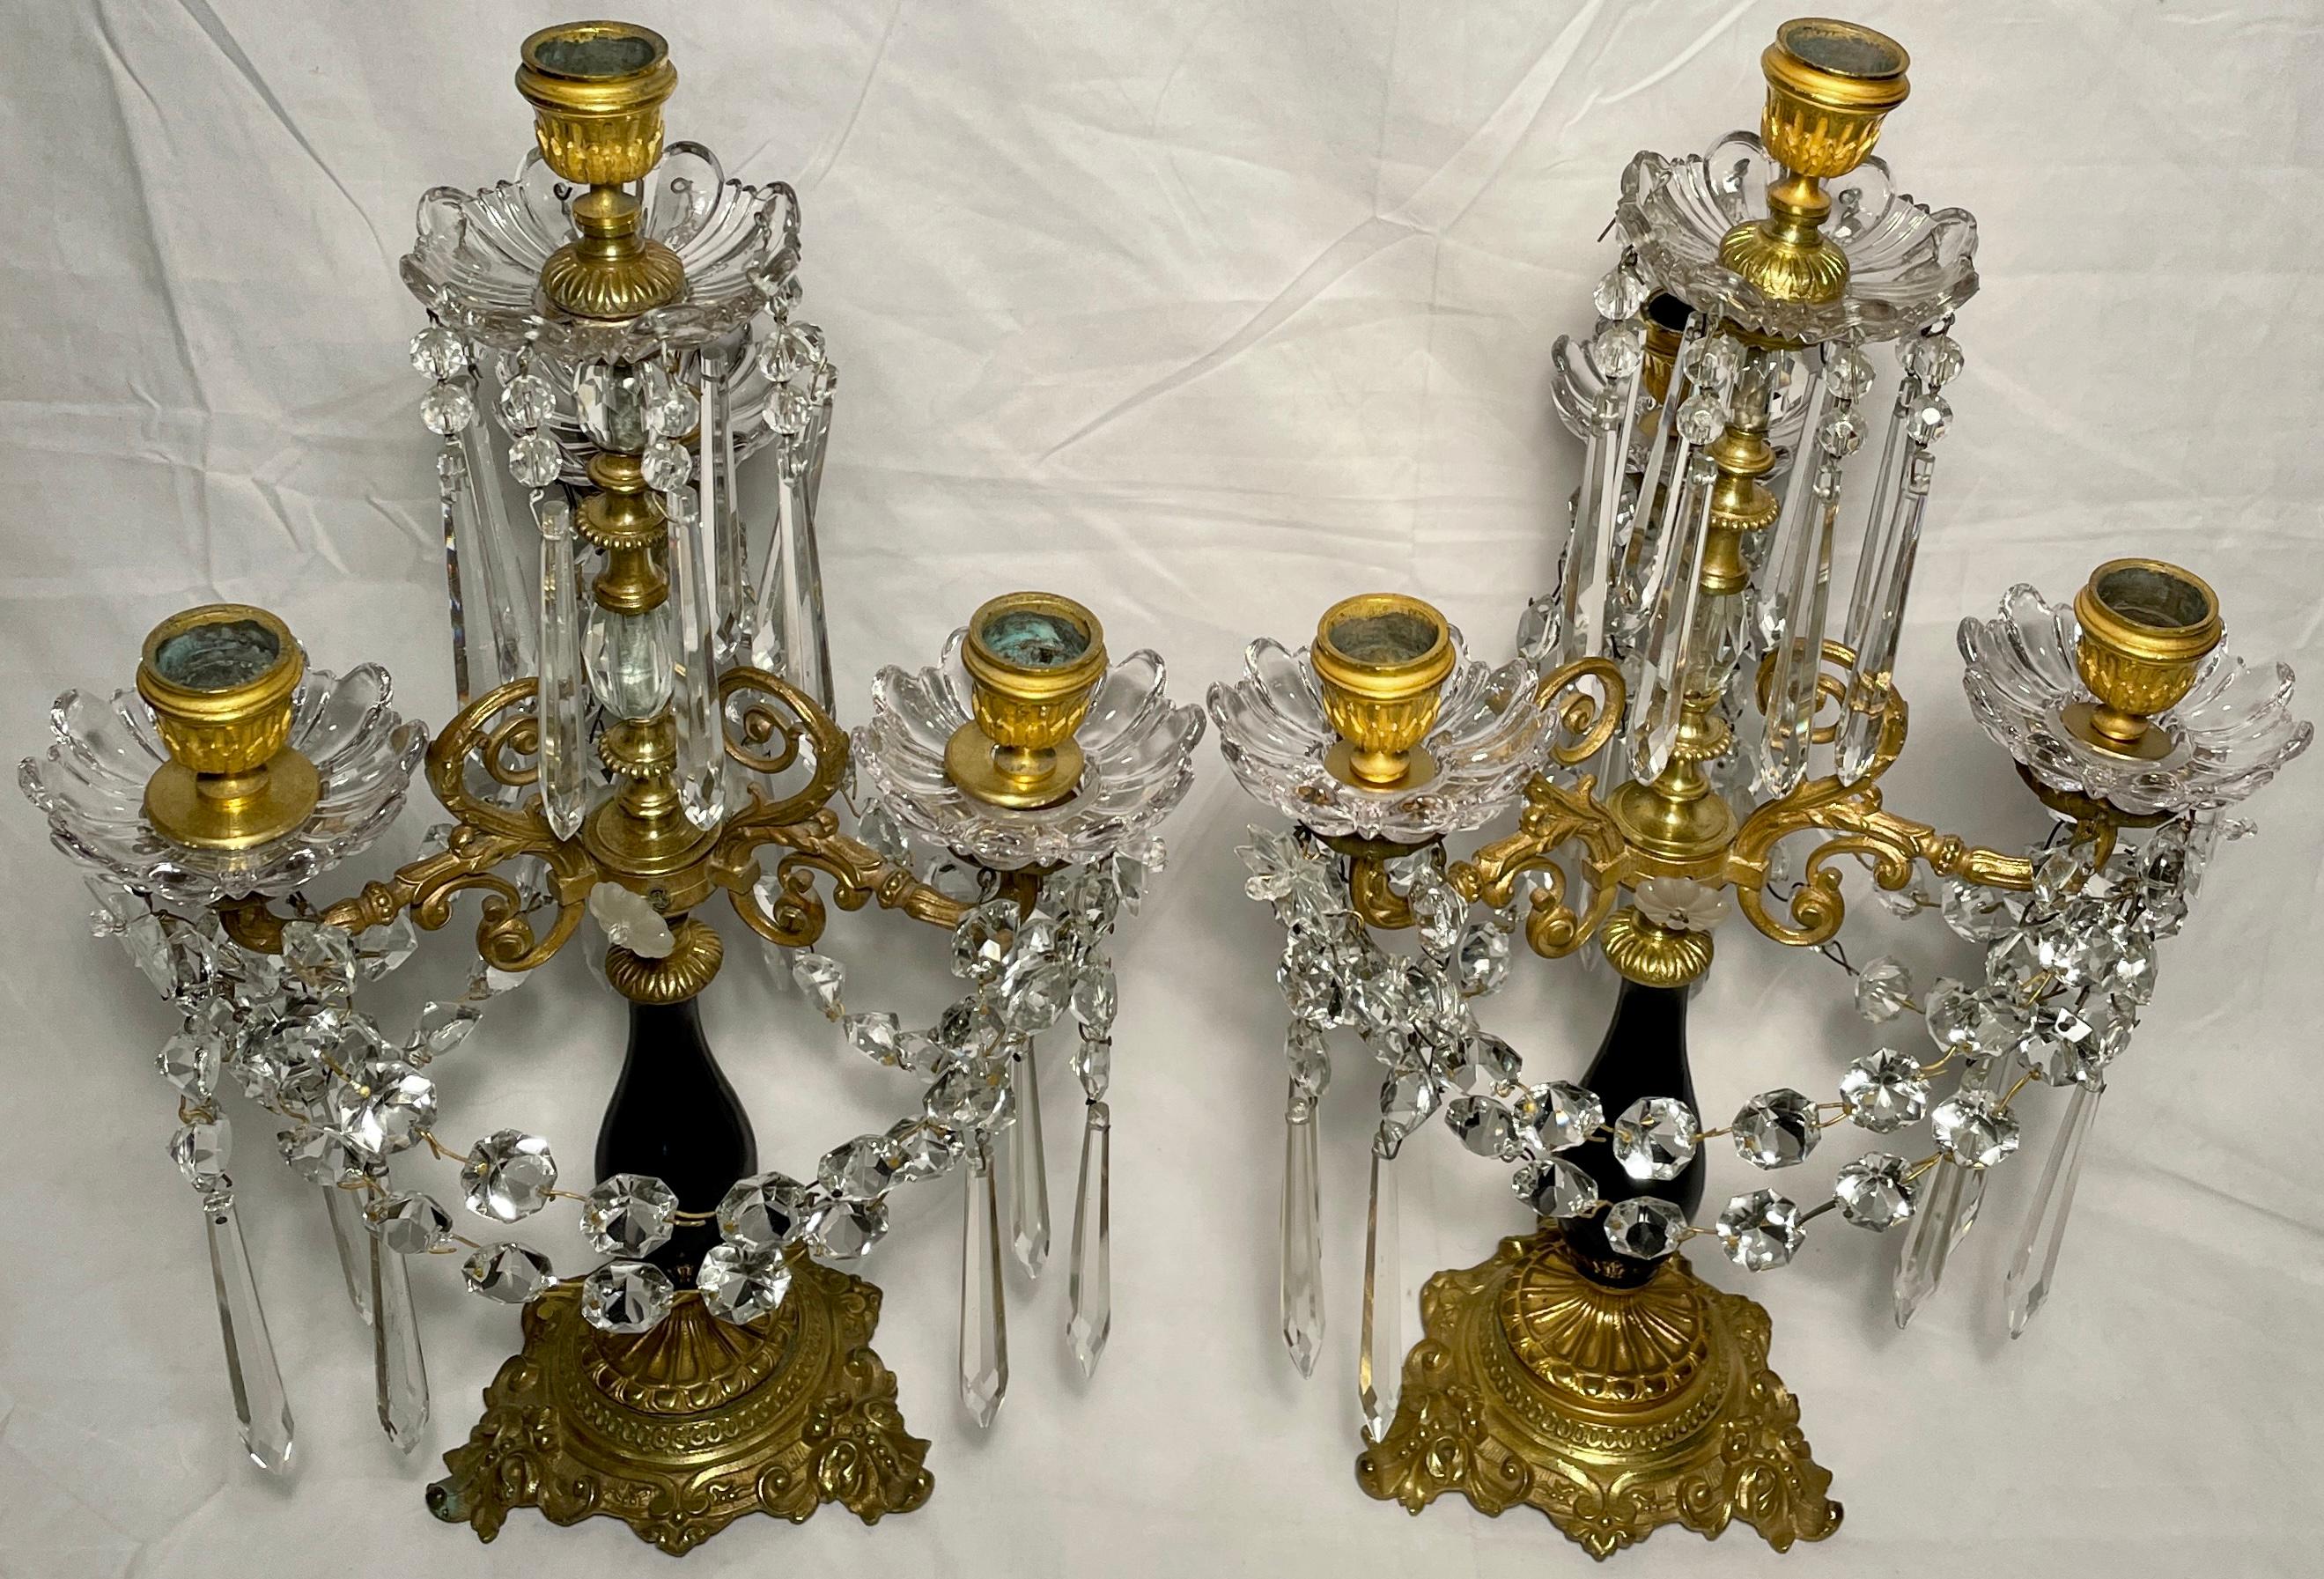 Paire de candélabres français anciens en bronze doré, cristal taillé et porcelaine de cobalt, datant des années 1880.